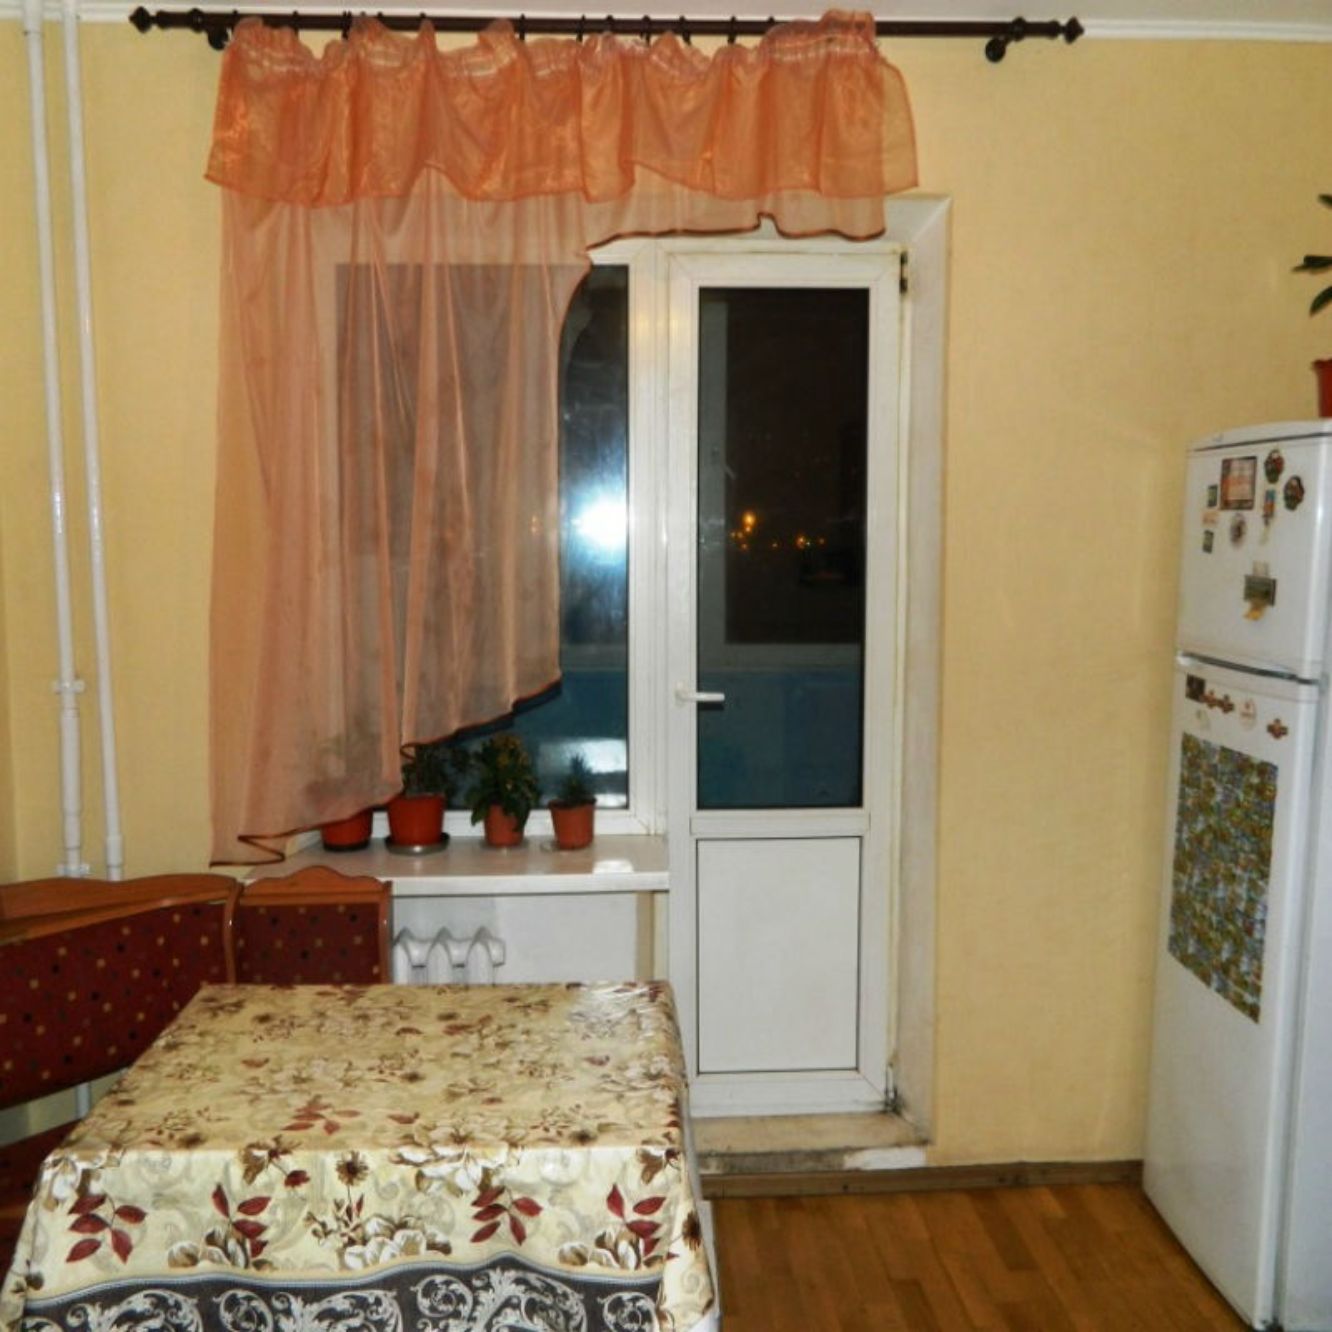 Хостел в Киеве на ул.Григоренко18-а.Кухня